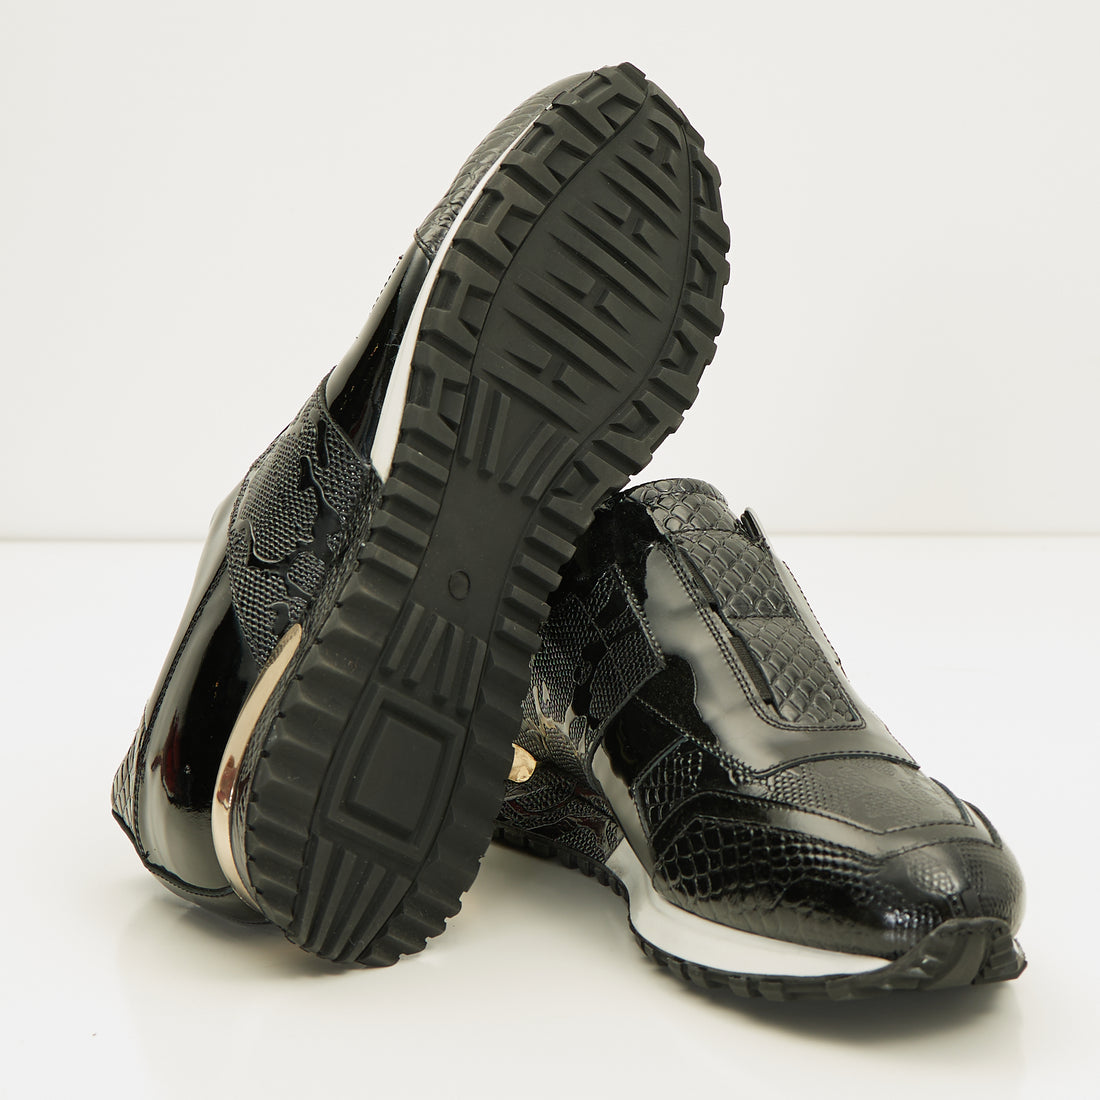 Leather Embossed Snakeskin Sneakers - Black Black